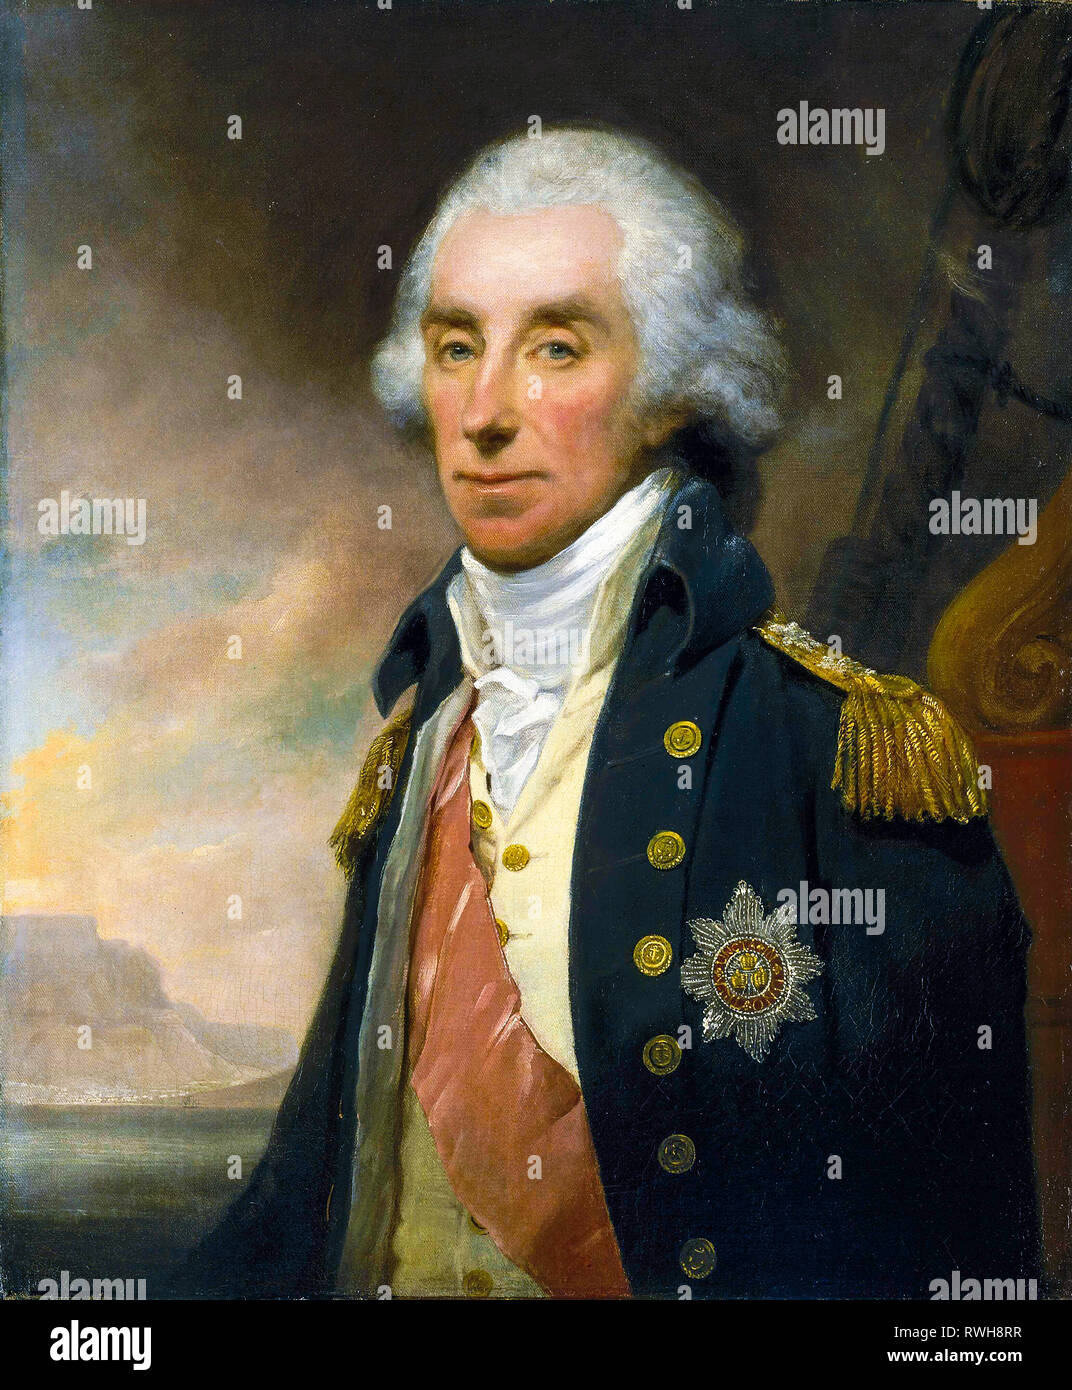 L'Ammiraglio Lord George Keith Elphinstone, primo Visconte Keith (1746-1823), ritratto dipinto, c. 1799 da William Owen Foto Stock